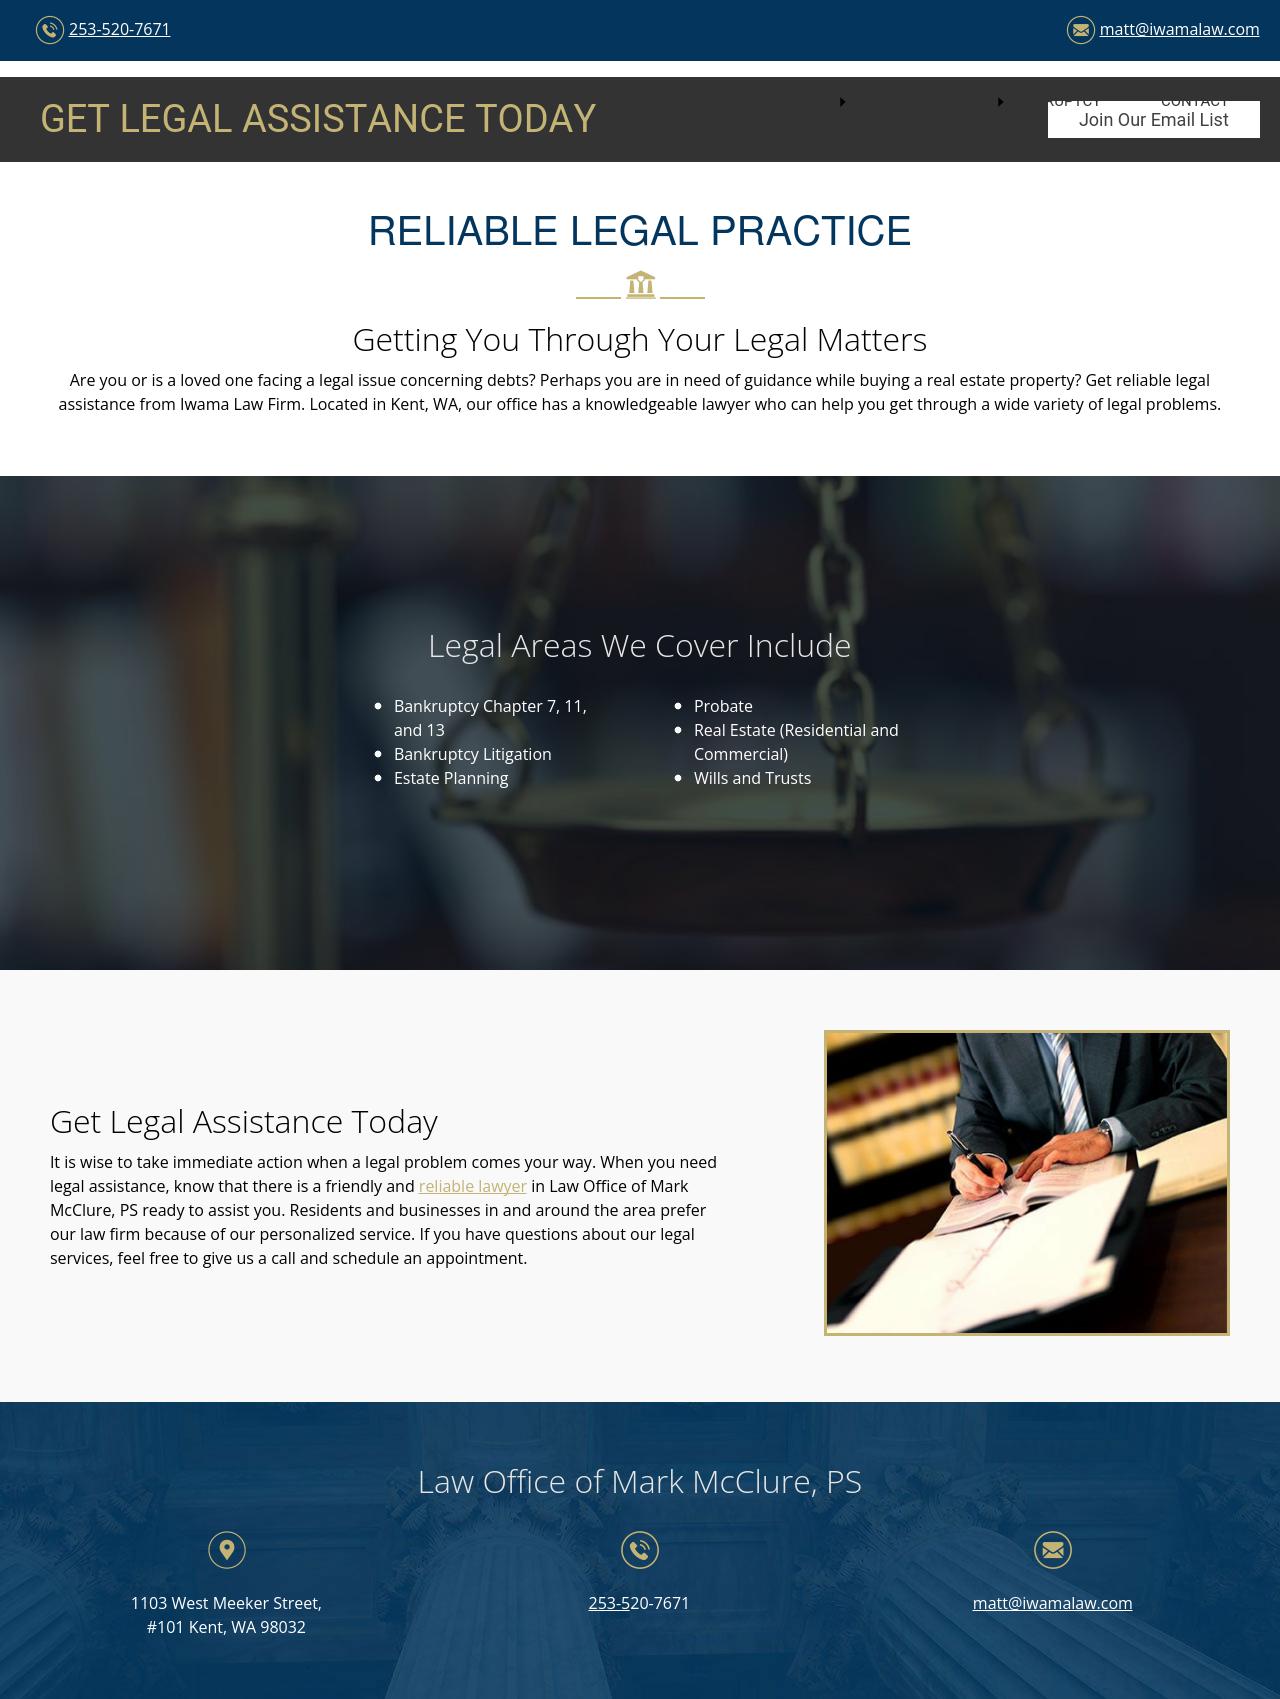 Iwama Law Firm - Kent WA Lawyers